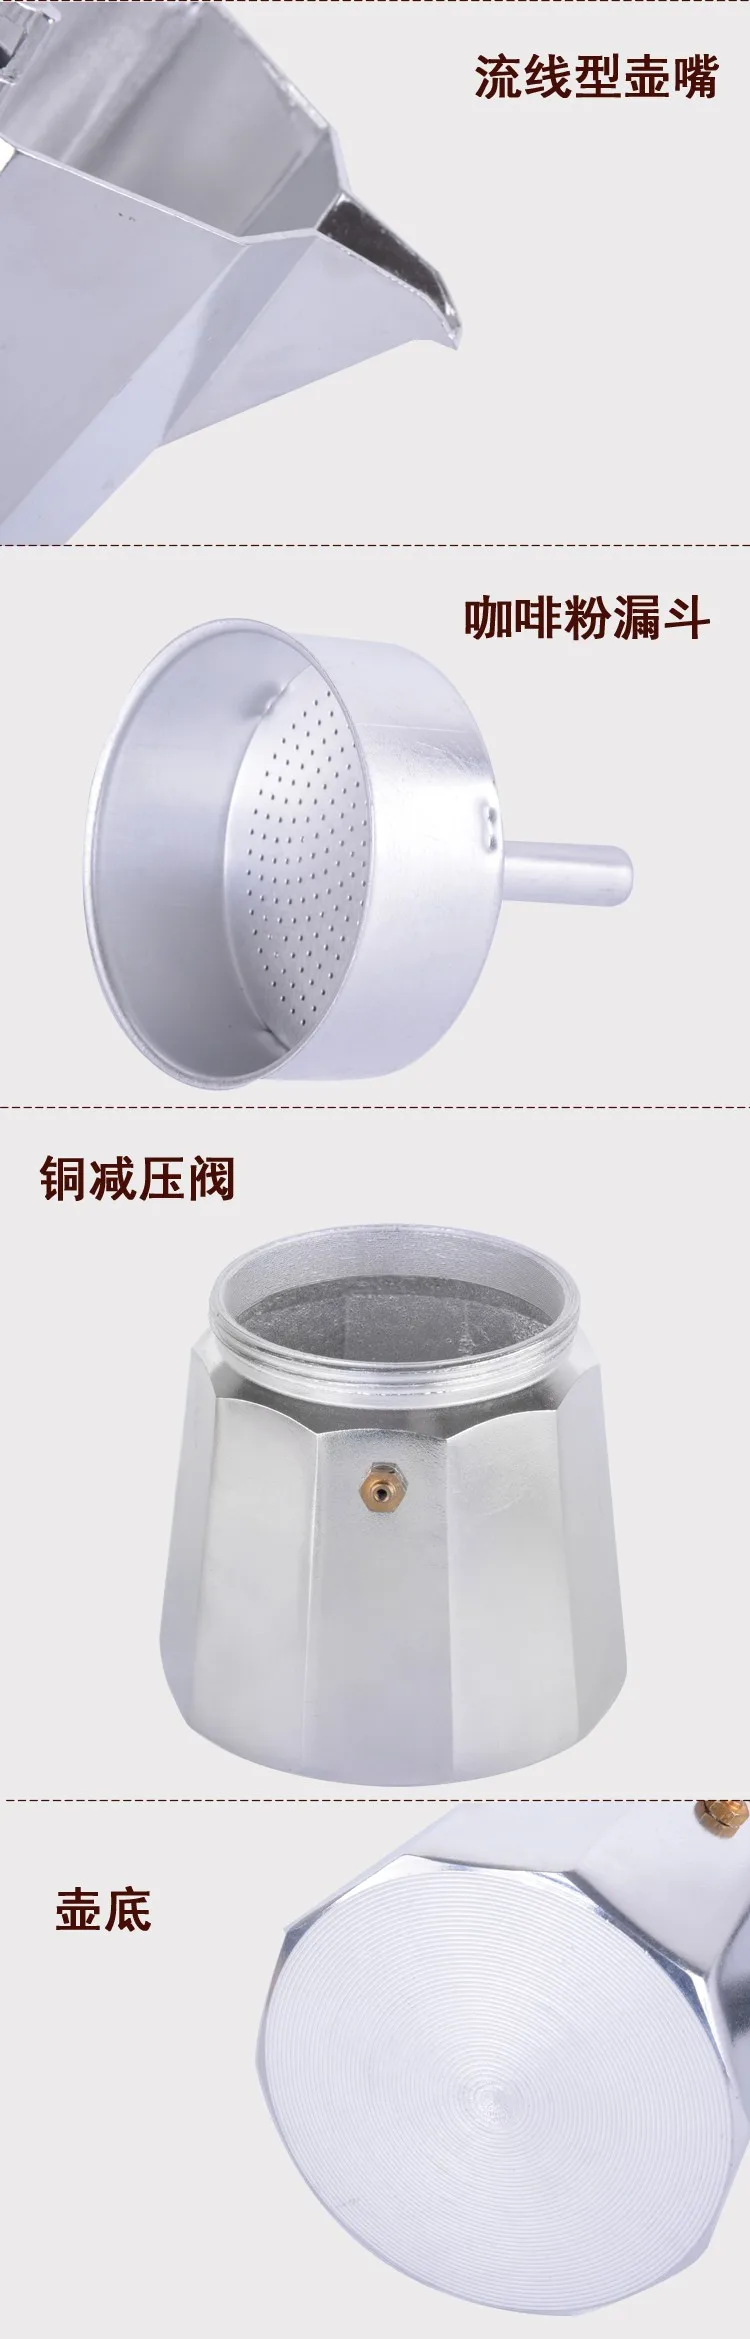 FeiC 1 шт. алюминиевый moka горшок Bialetti стиль 1-12 чашек Эспрессо кофеварка для газовой плиты варочная поверхность для бариста